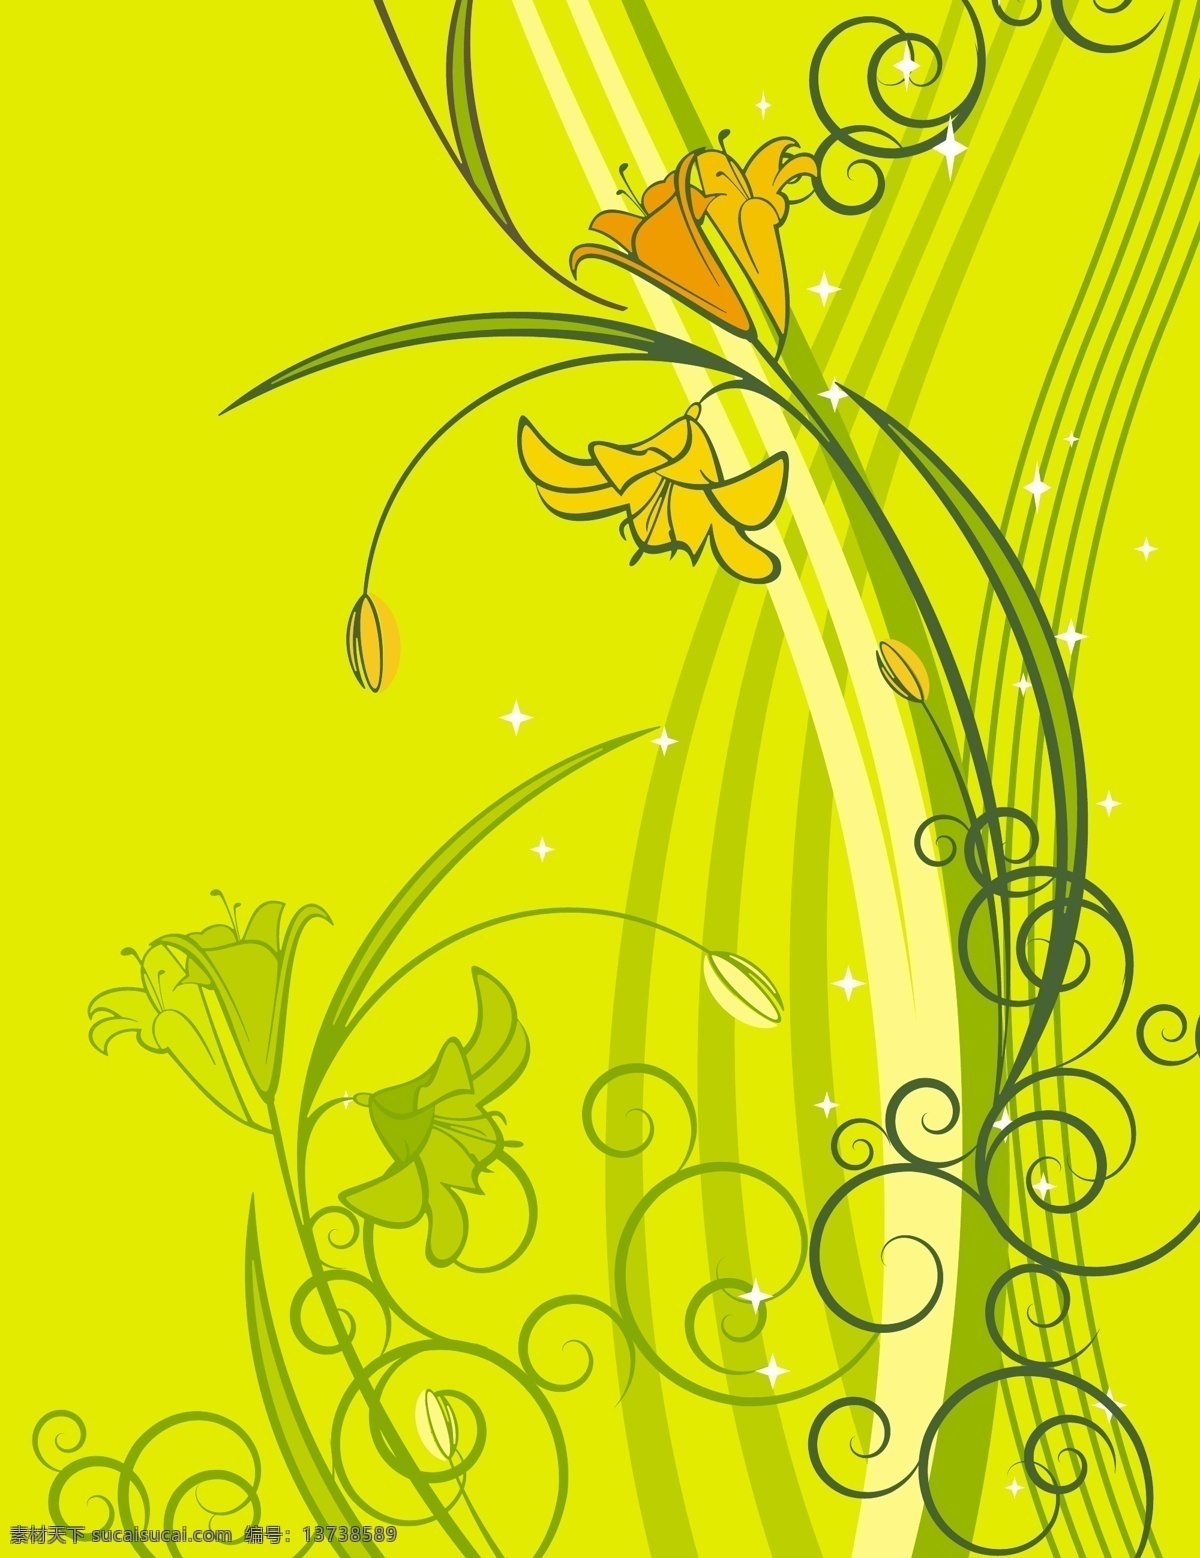 梦幻 线条 花卉 卡通 矢量 矢量素材 设计素材 背景素材